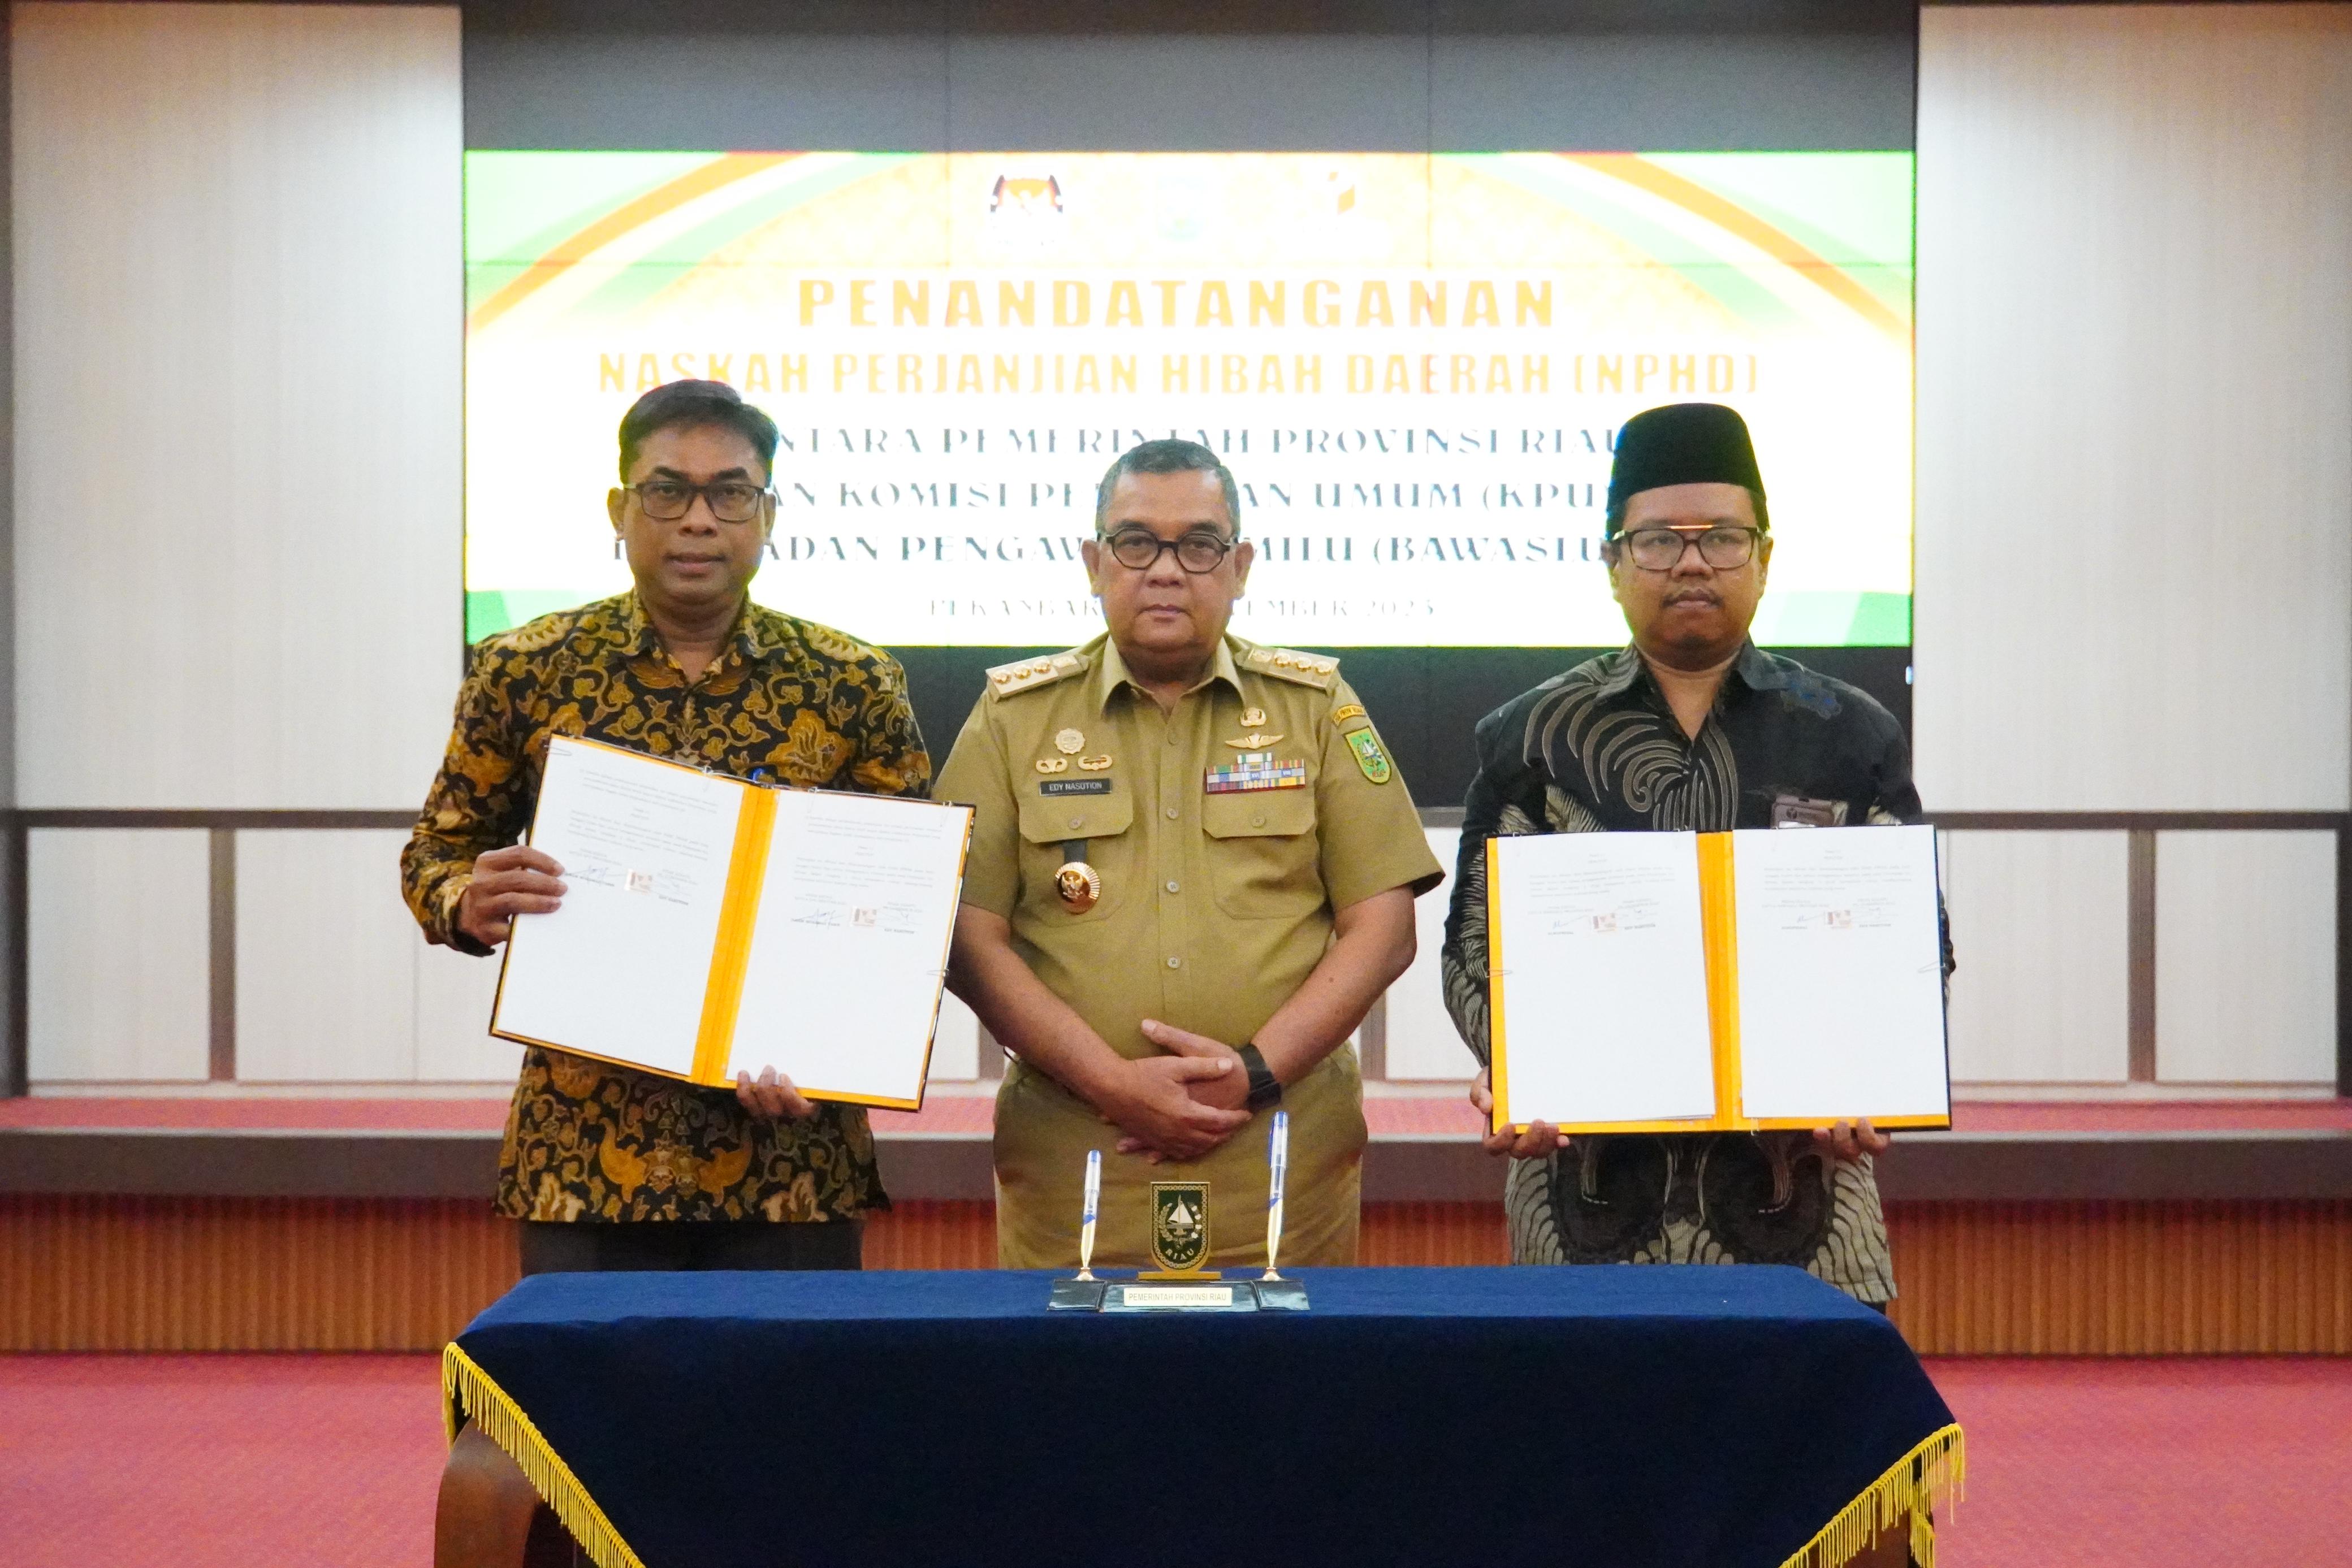 Penandatanganan NPHD, KPU Riau Dapat Anggaran Rp133 Miliar Untuk Pilkada 2024